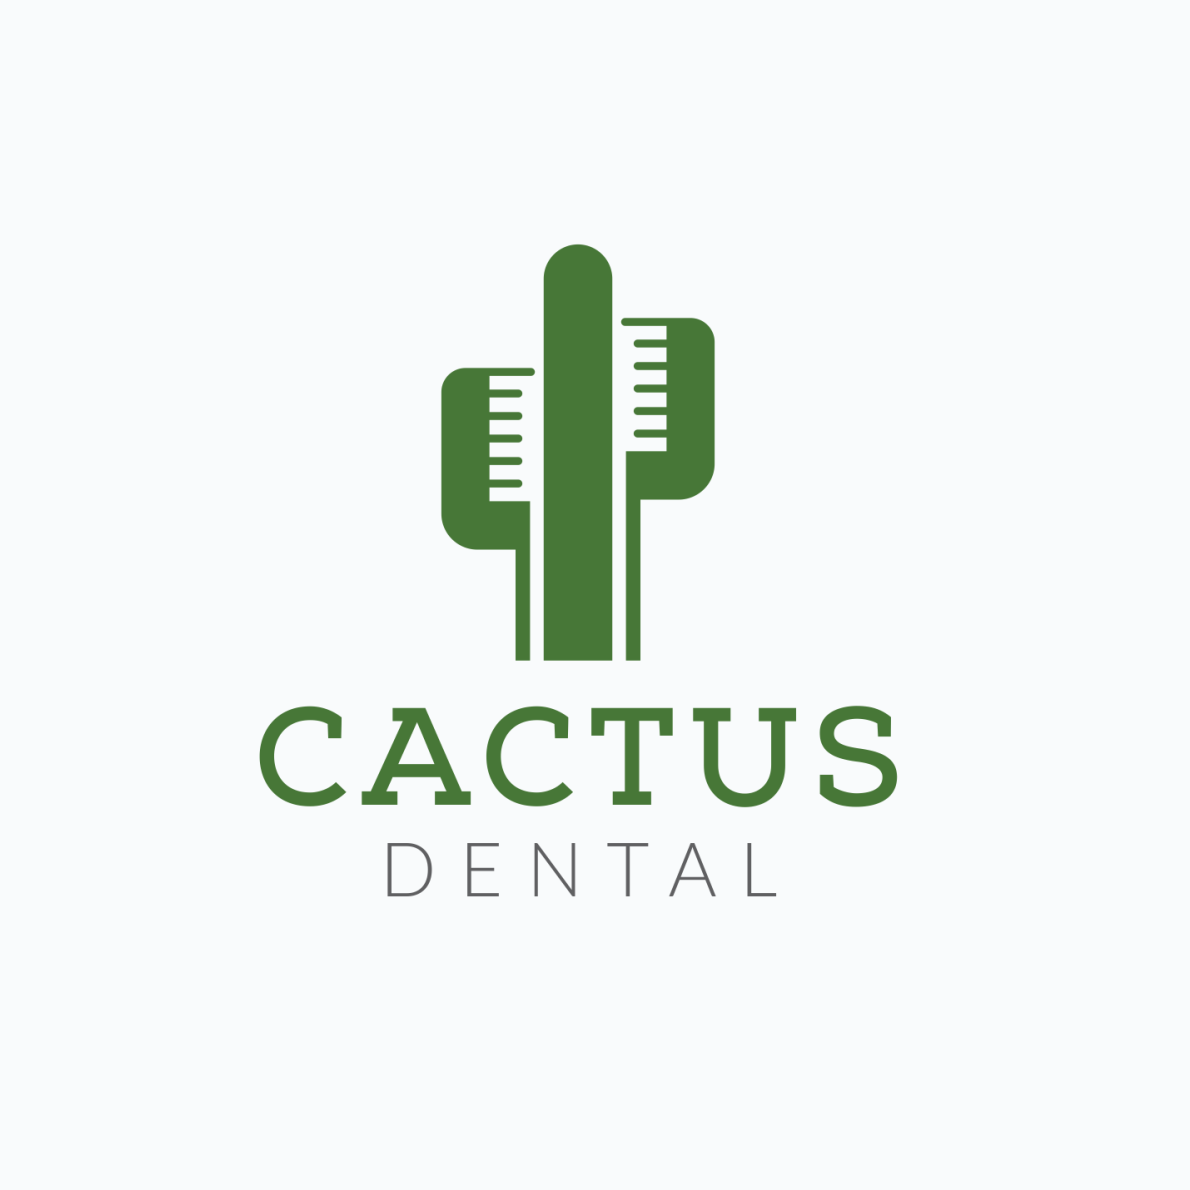 oryginalny projekt logo dla Cactus Dental